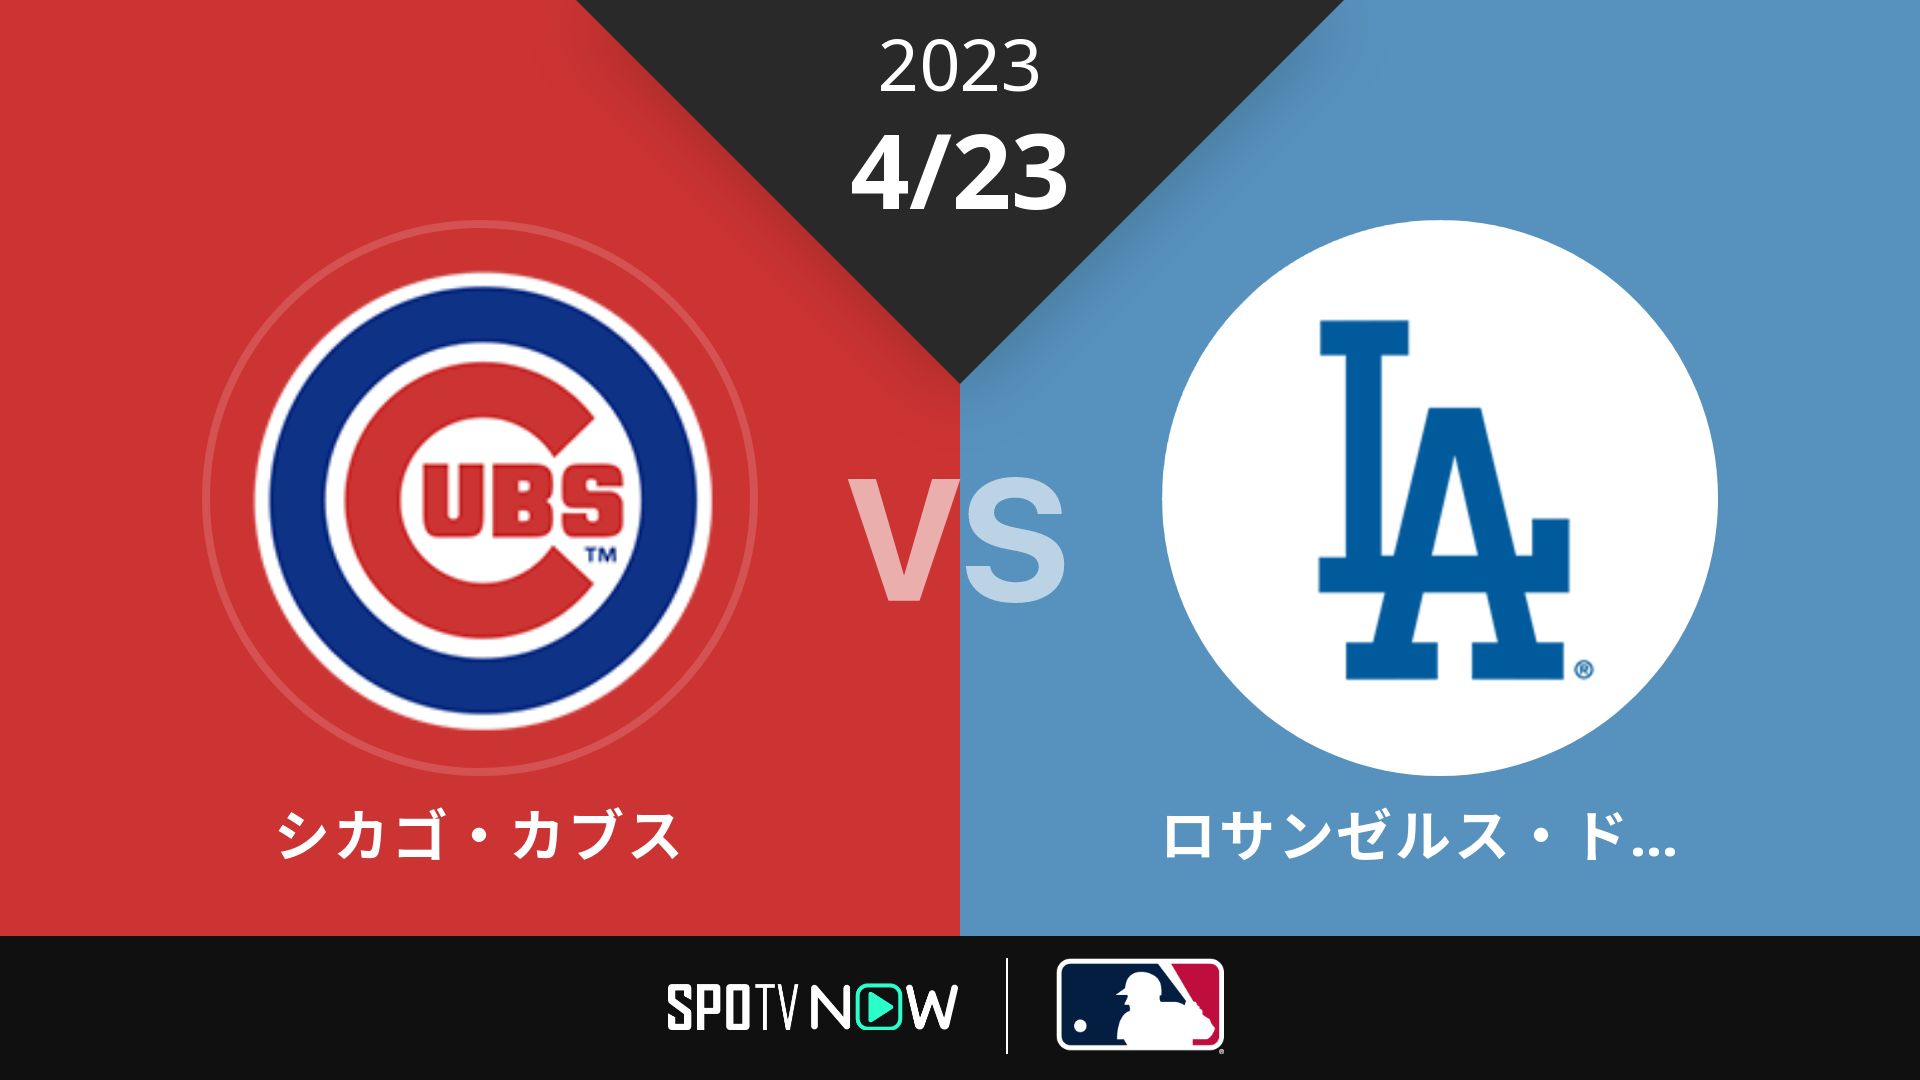 2023/4/23 カブス vs ドジャース [MLB]